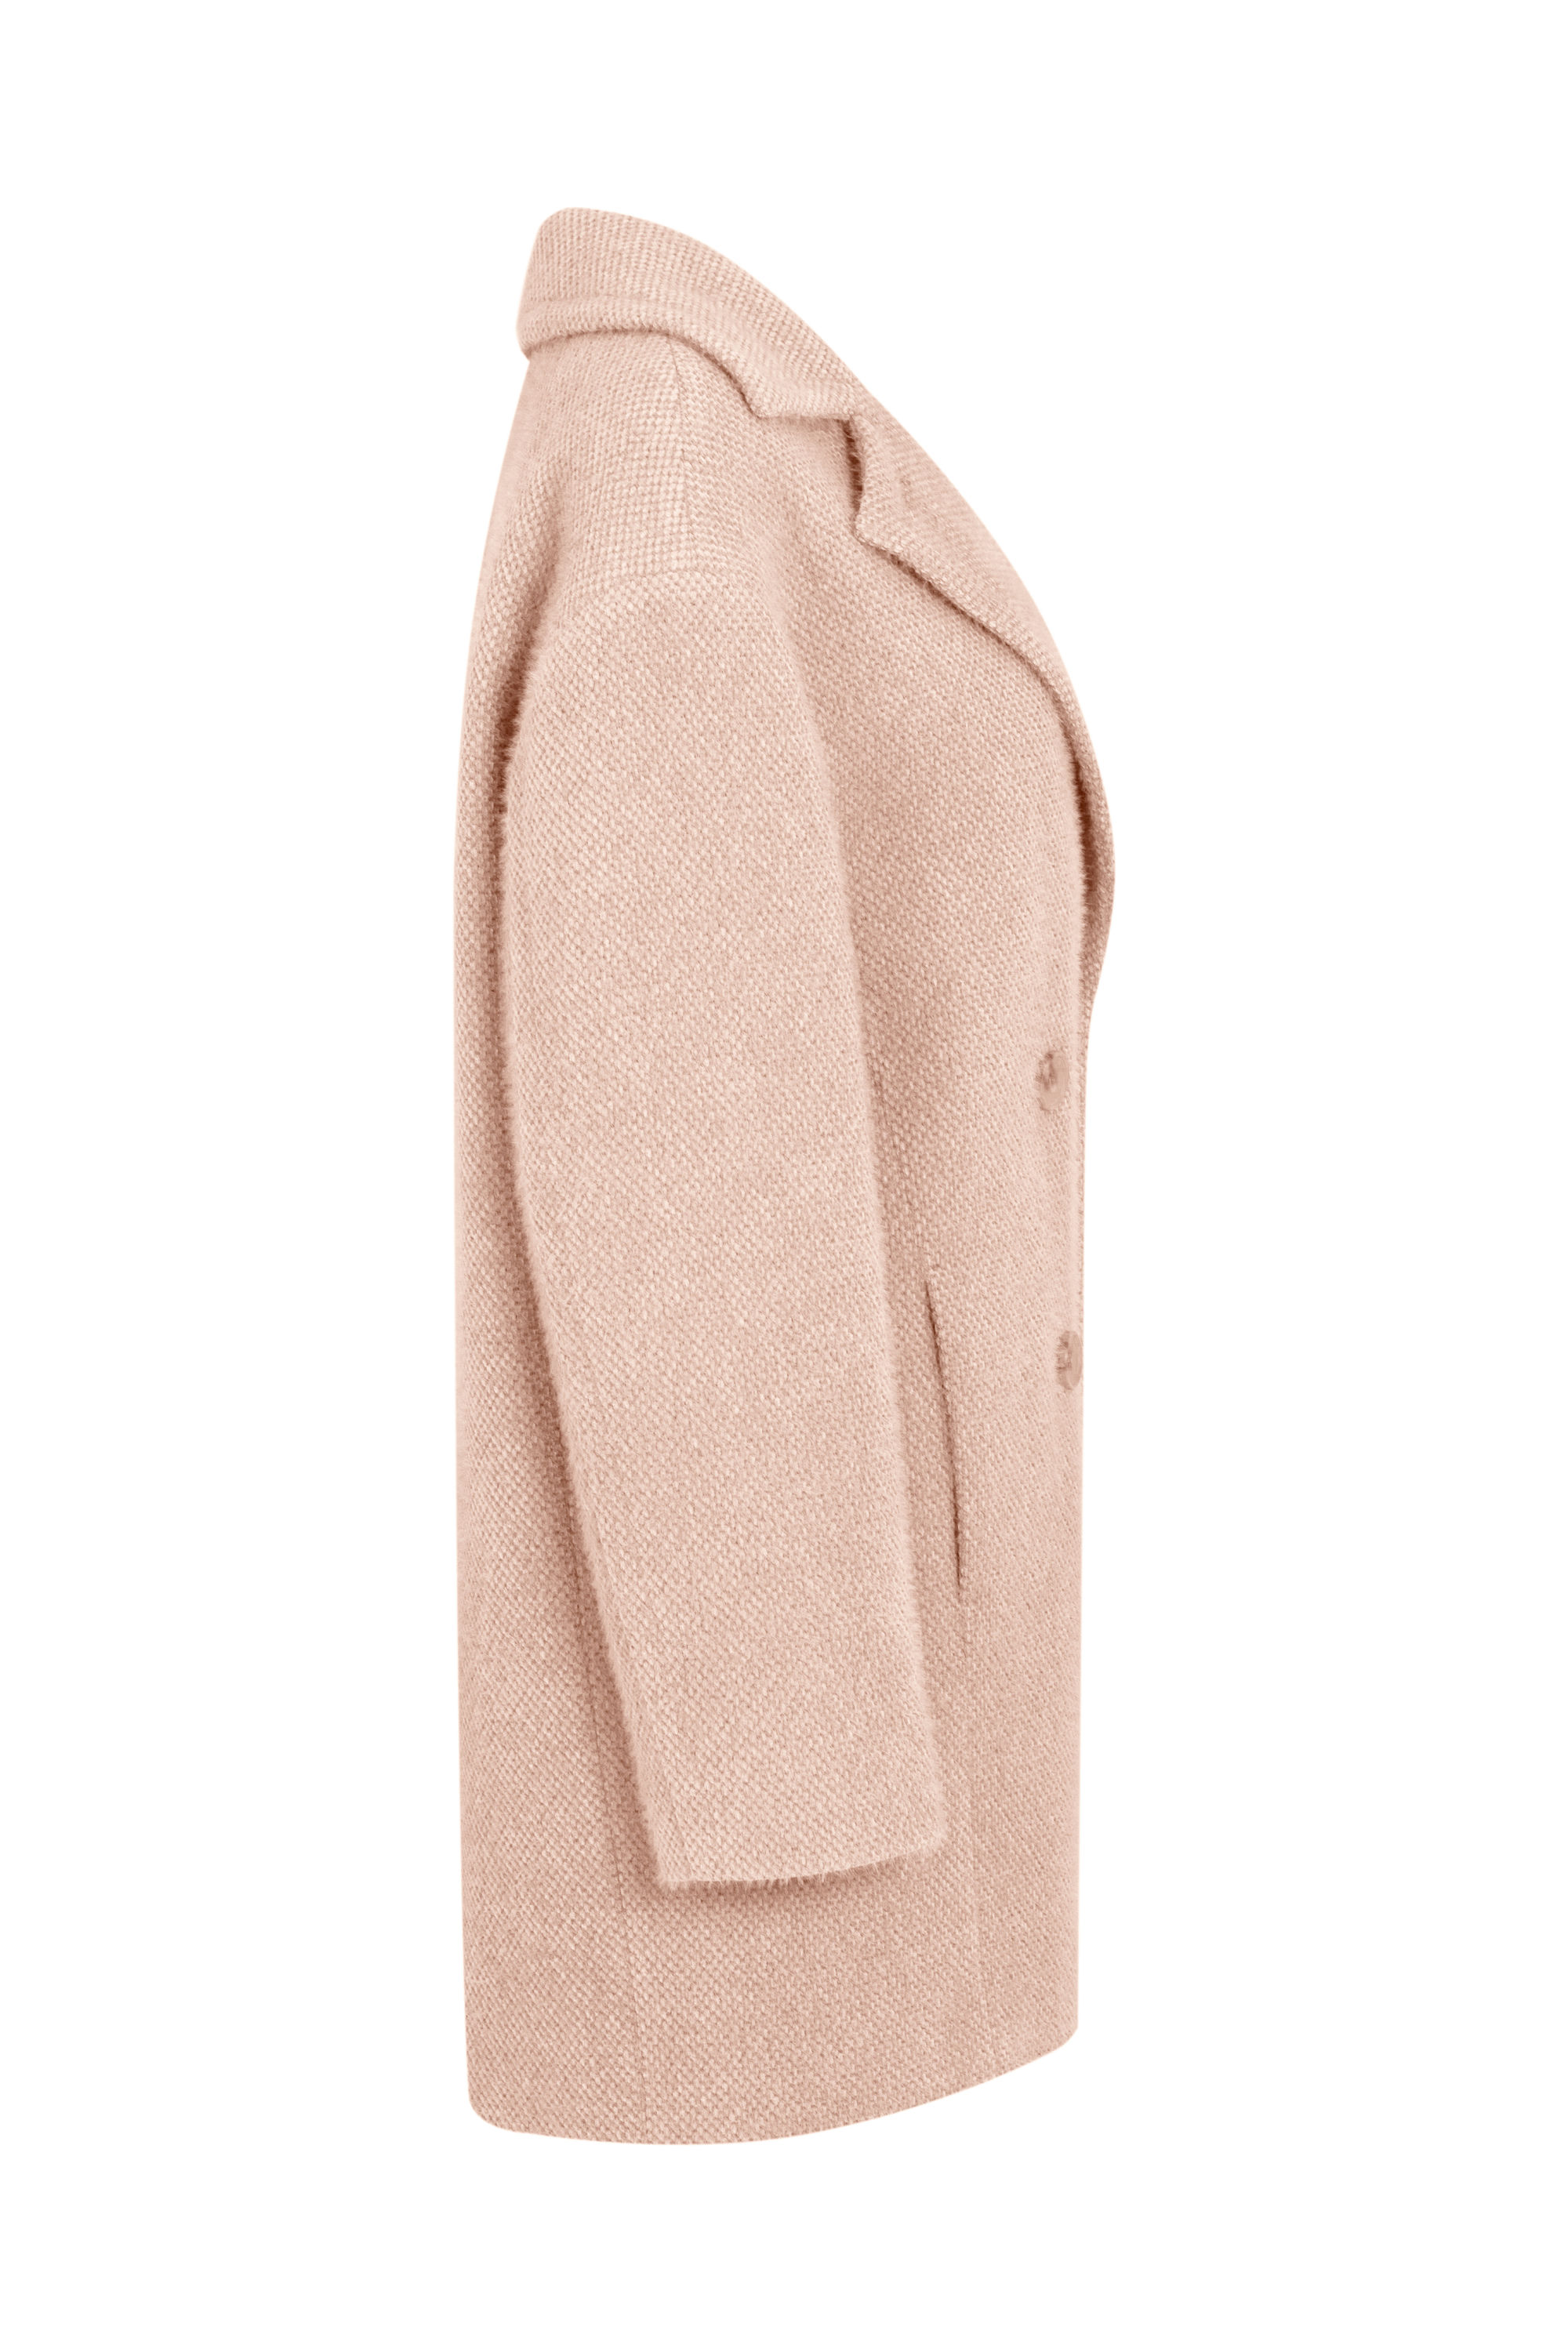 Пальто женское демисезонное 1-12028-1